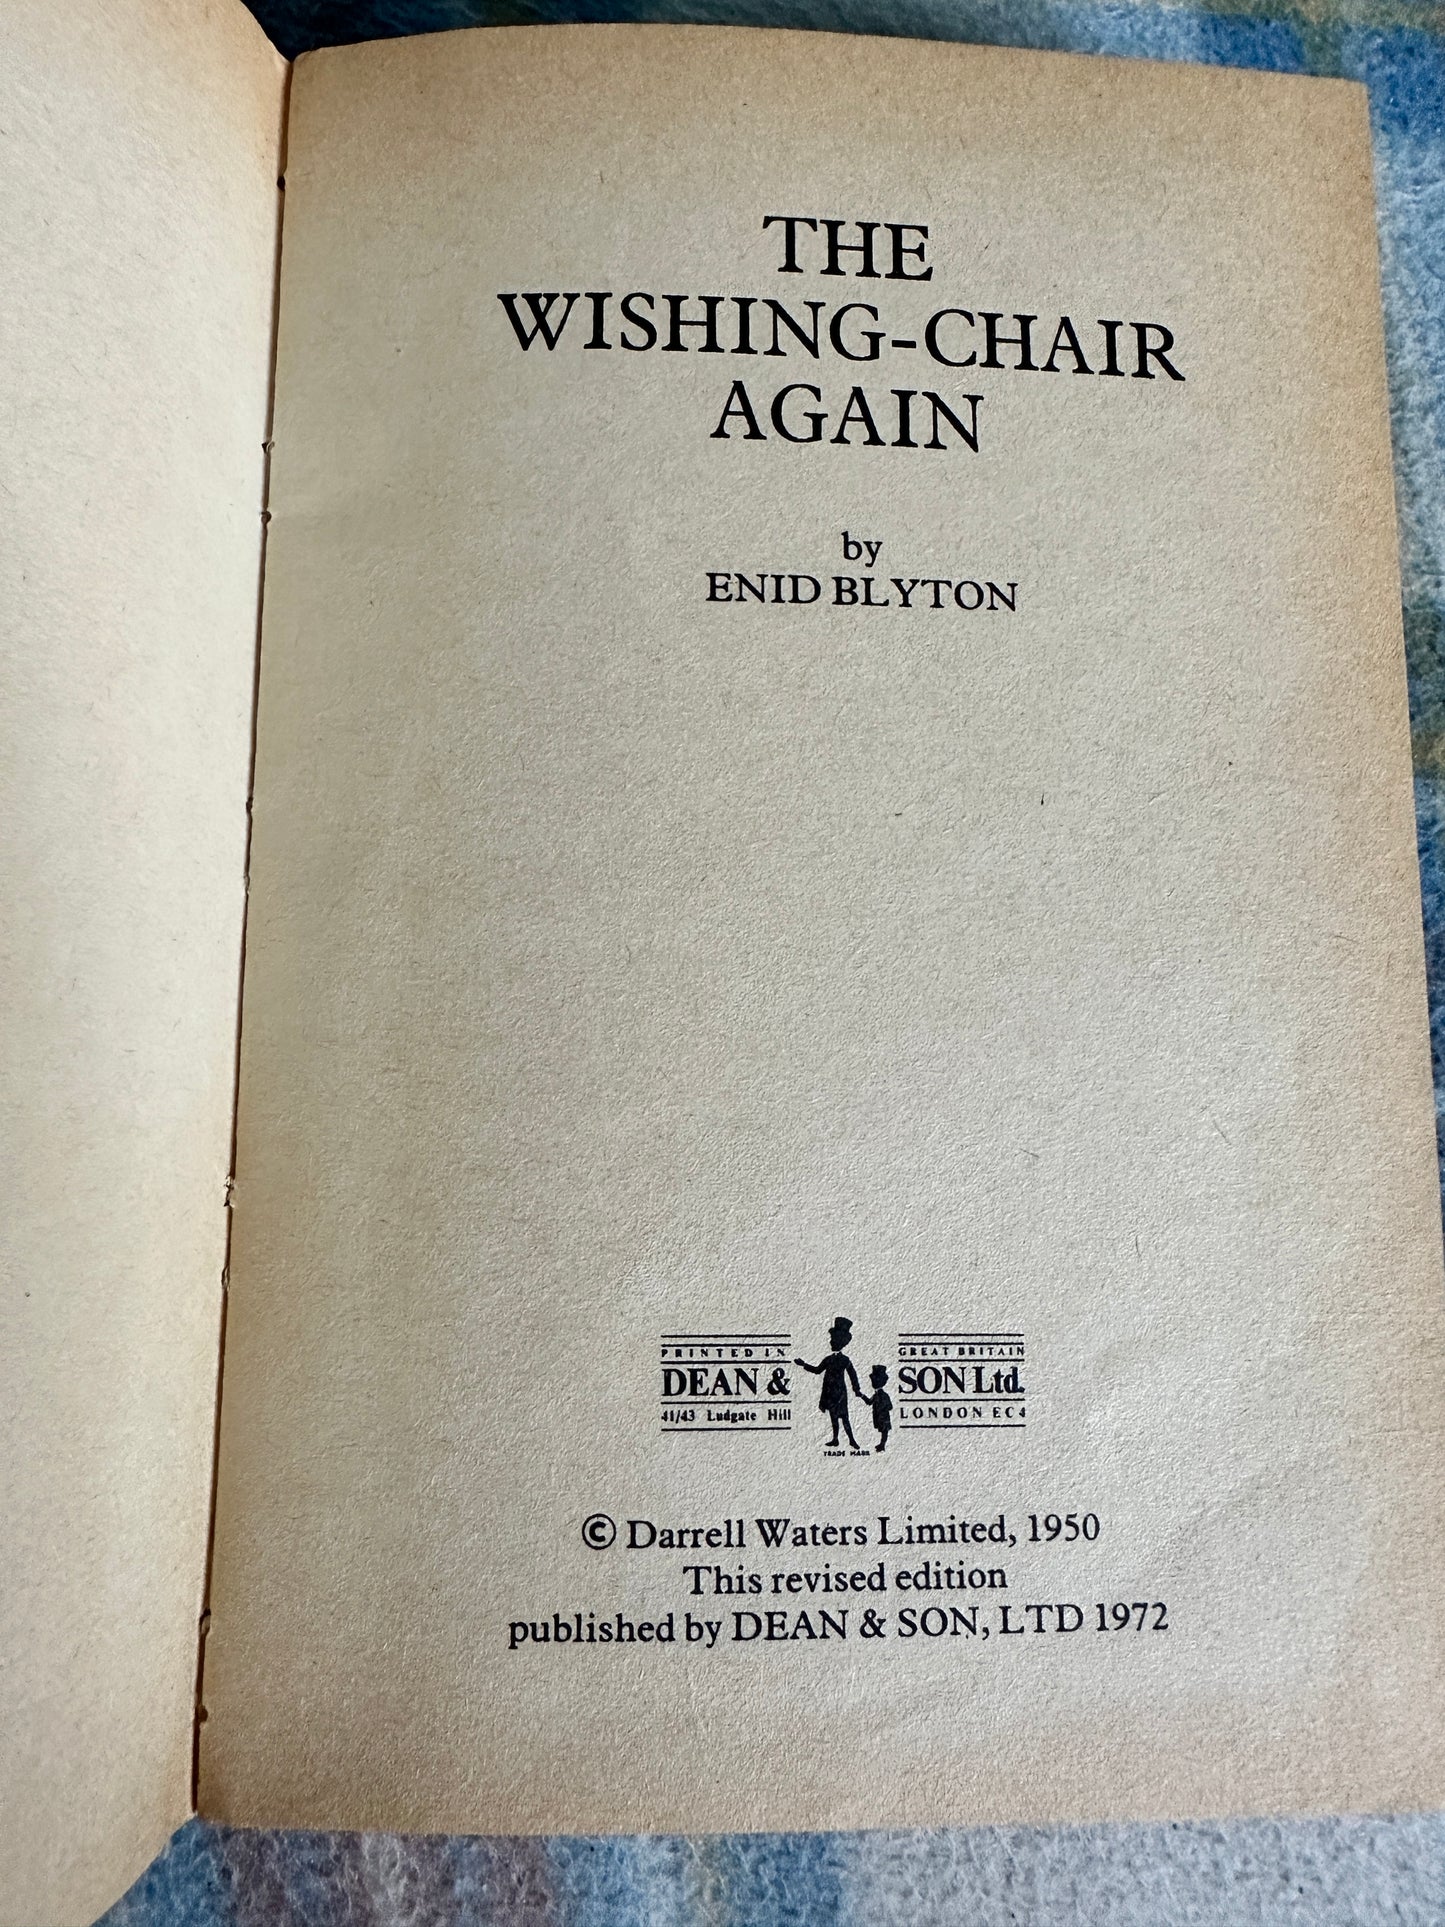 1972 The Wishing-Chair Again - Enid Blyton (Dean & Son Ltd)